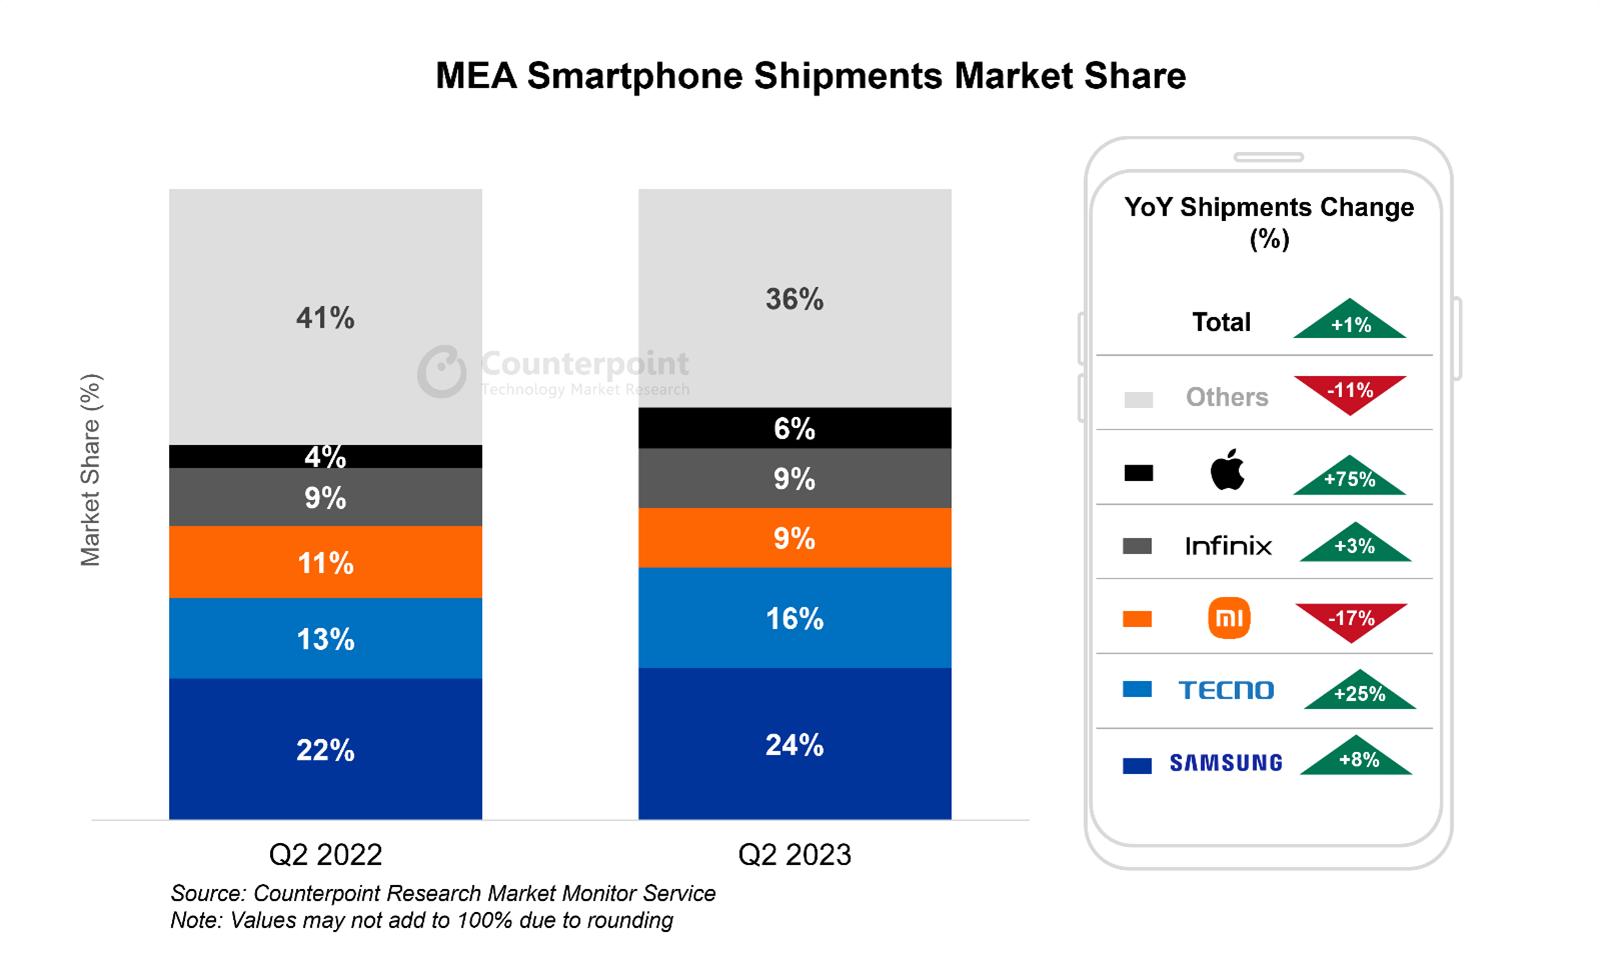 MEA smartphone shipments market share